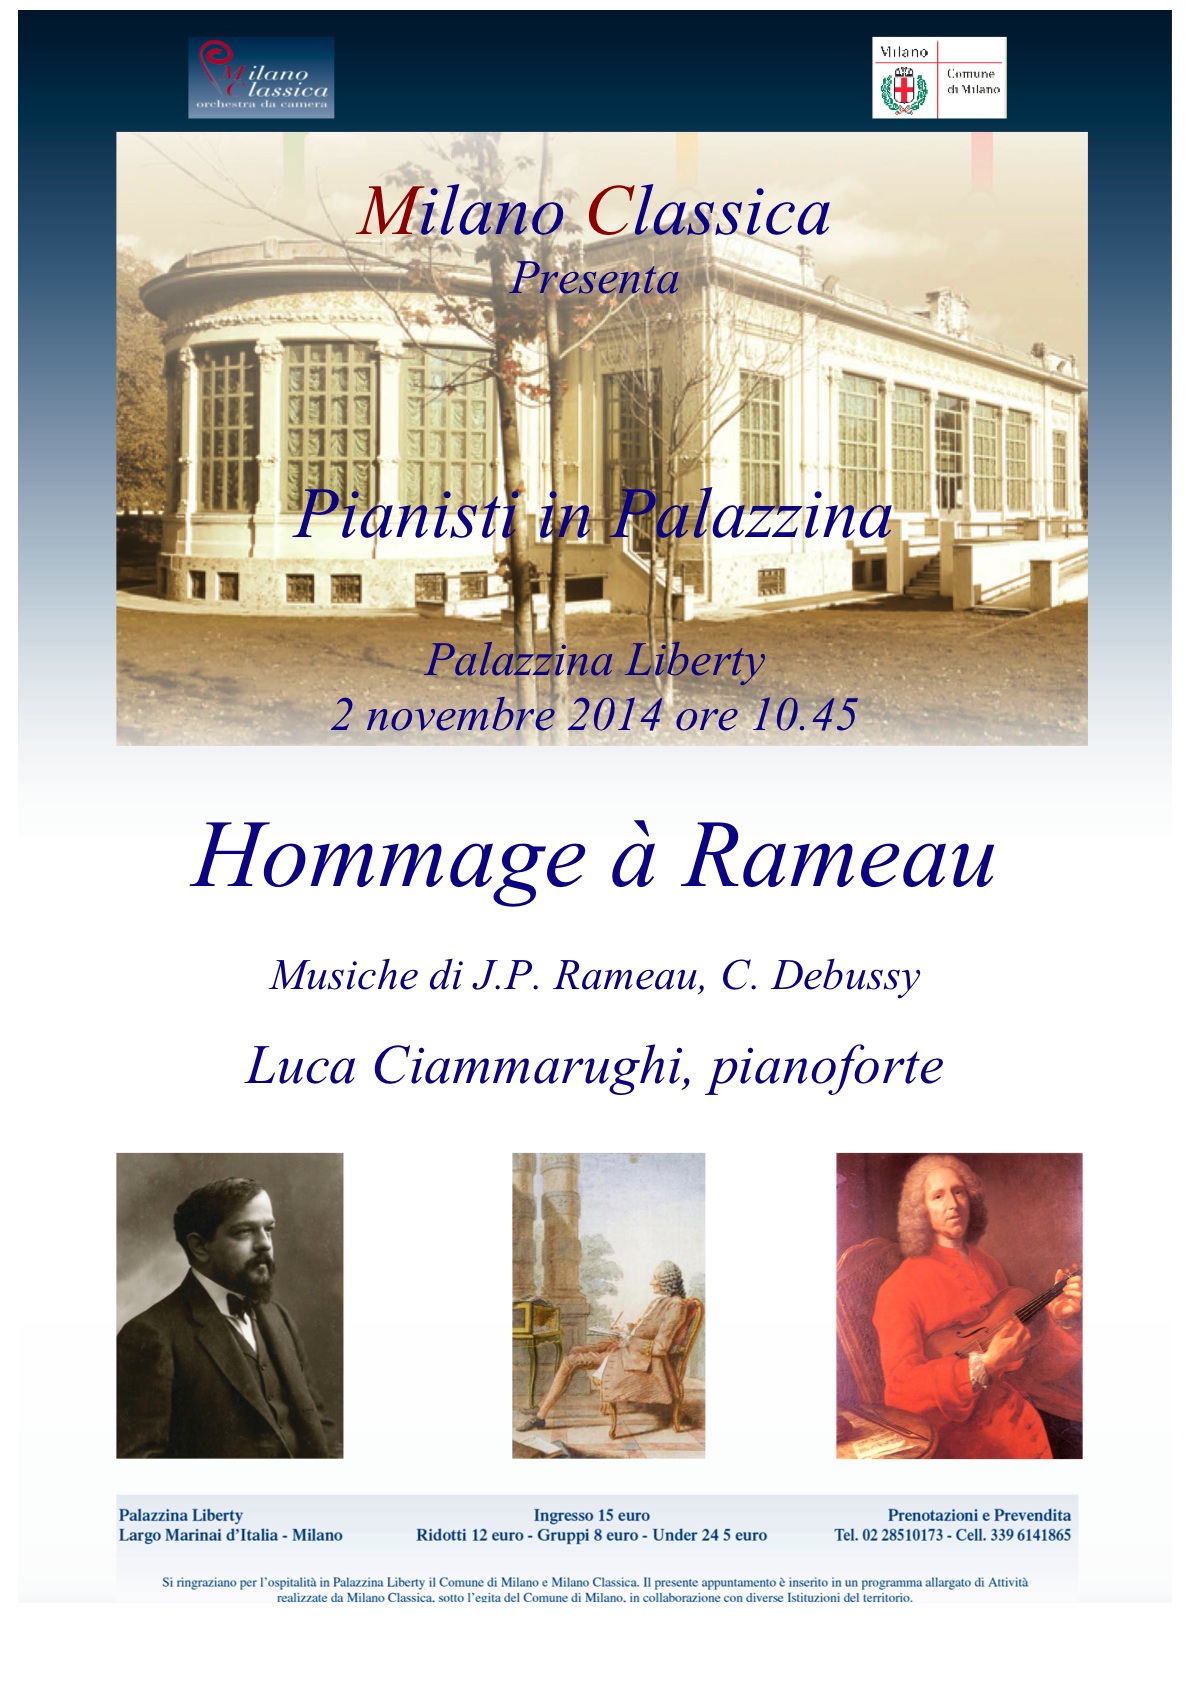 Hommage a Rameau 2 novembre corretto